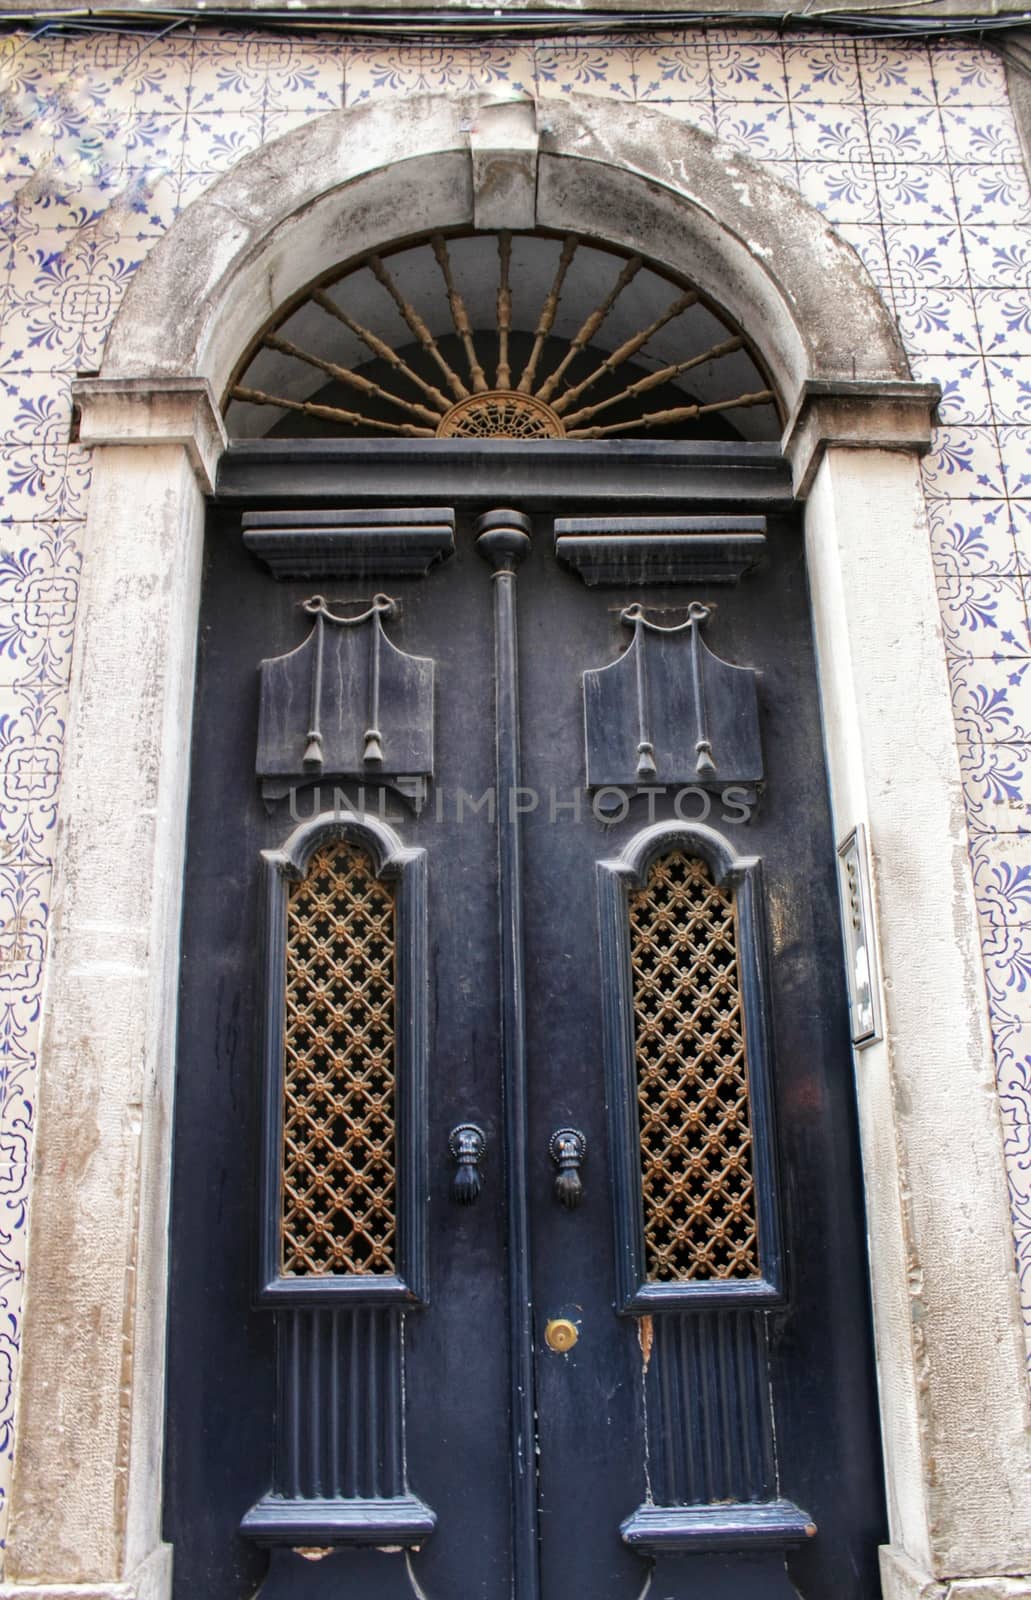 Old wooden door in Lisbon. Wrought metal details on the door.